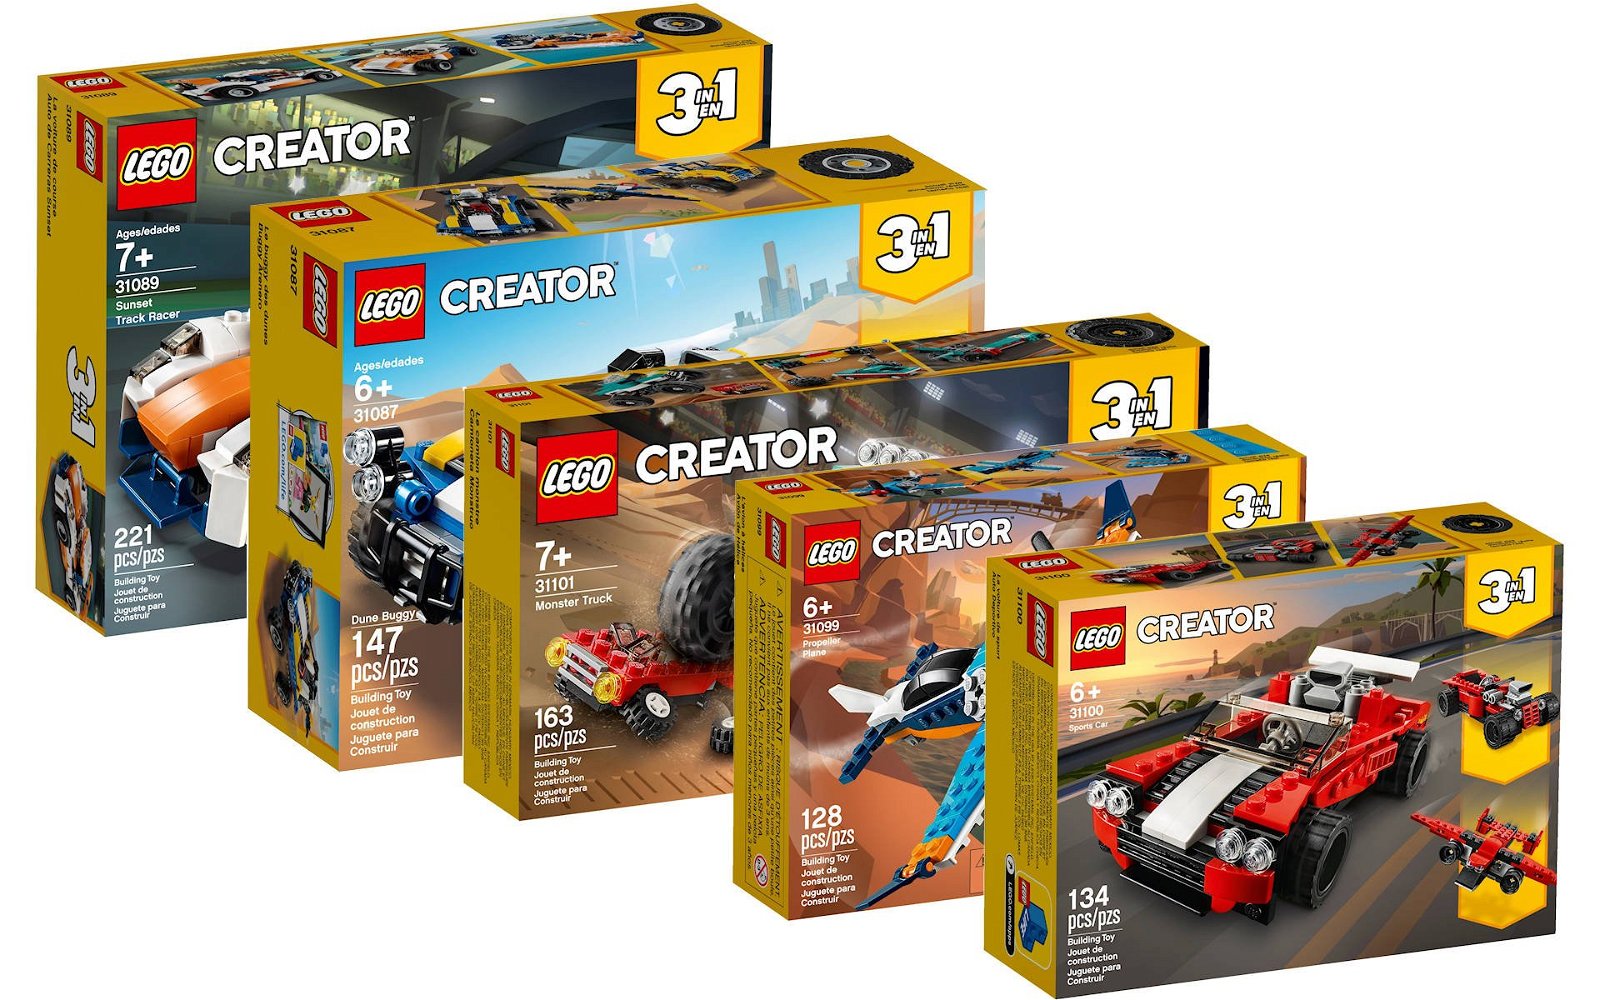 Immagine di LEGO: 5 set da meno di 20 euro da portare in vacanza